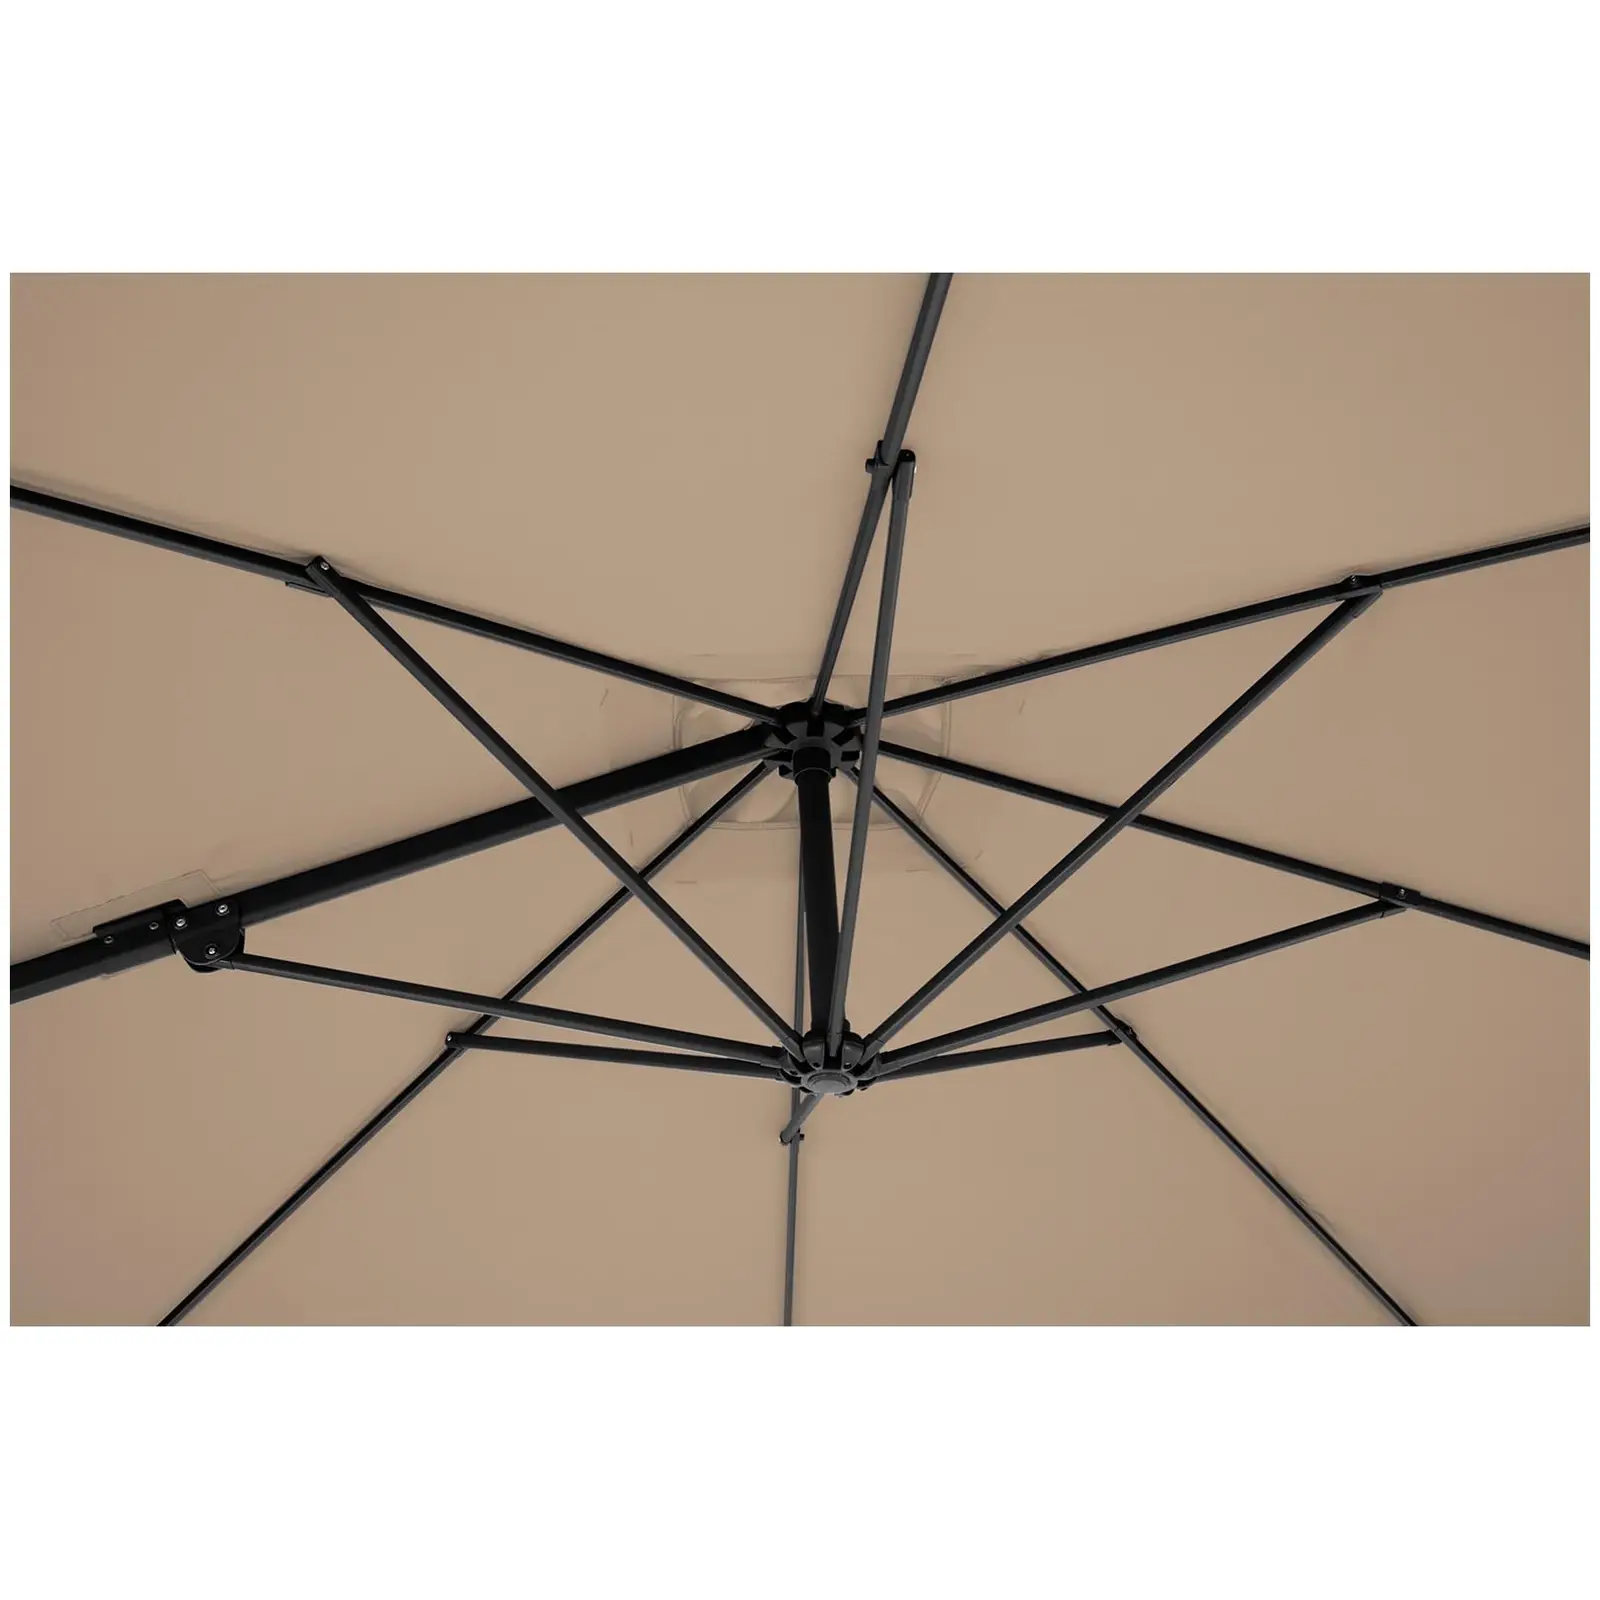 Occasion Parasol de jardin - Taupe - Carré - 250 x 250 cm - Pivotant